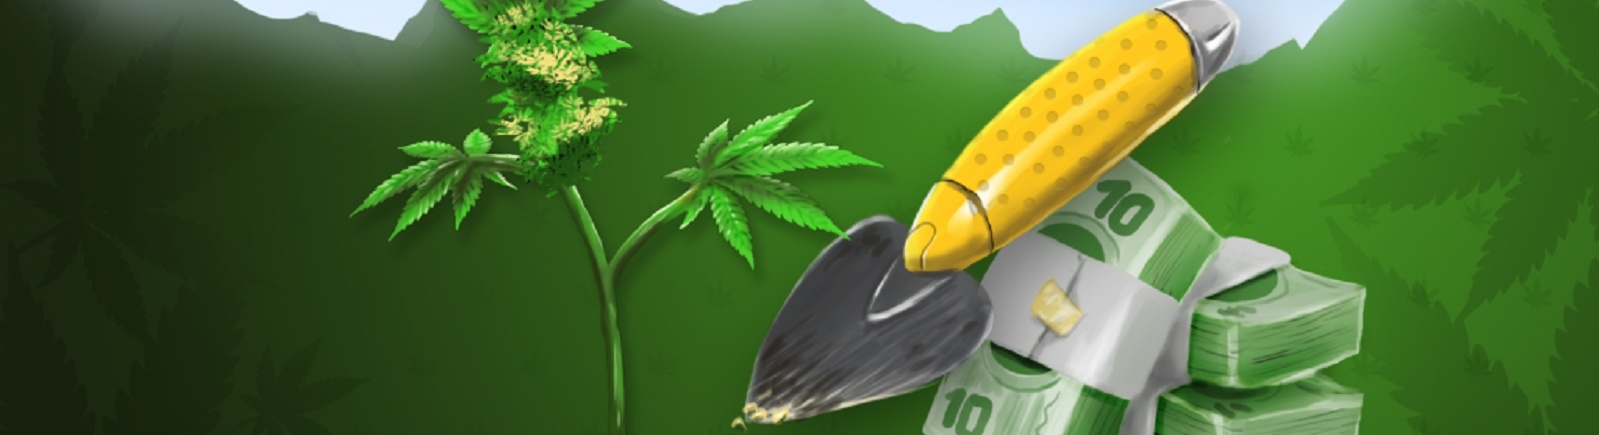 Марихуана игра где купить хорошие семена марихуаны